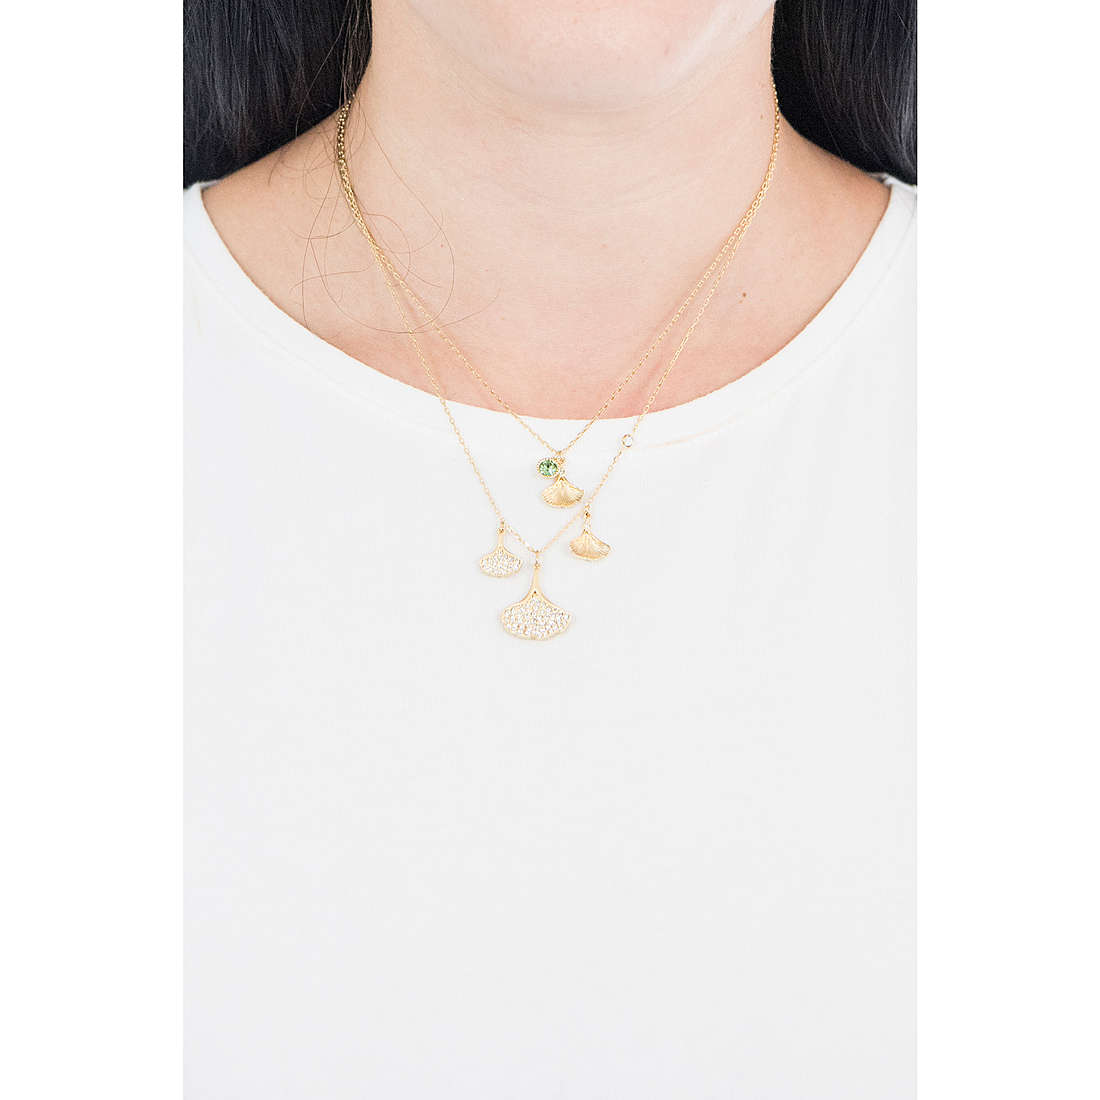 Swarovski necklaces Stunning woman 5527079 wearing